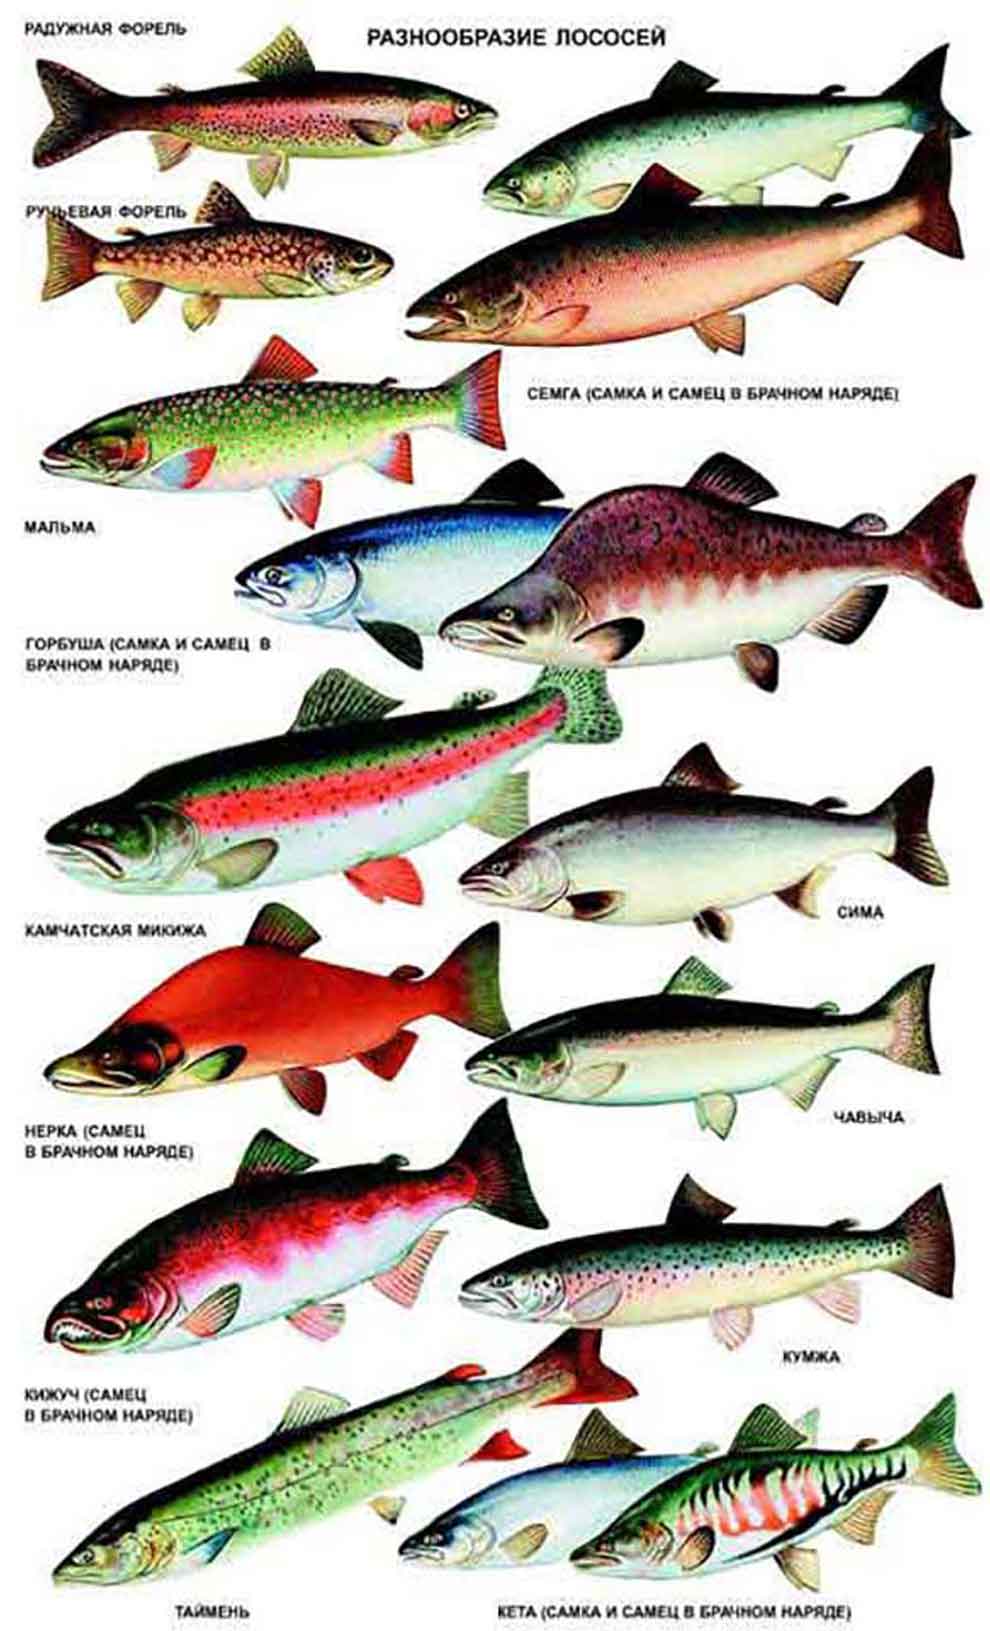 Мифы и правда о лососе и семге - почему рыба красная, какая лучше